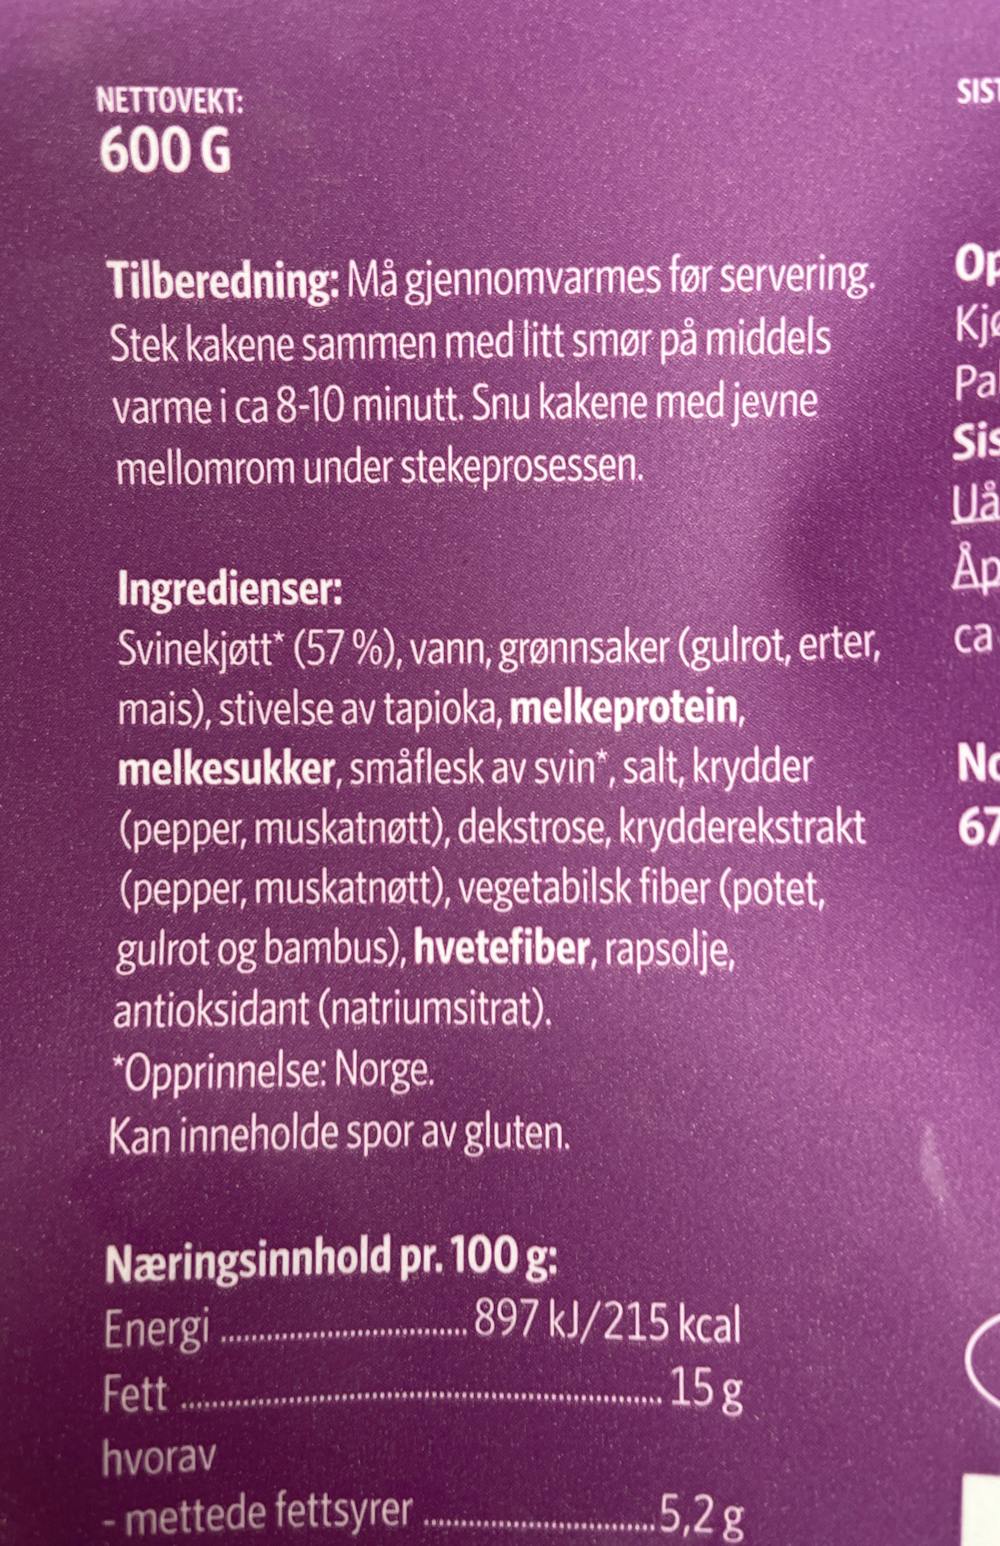 Ingredienslisten til Nordfjord Lunsjkaker